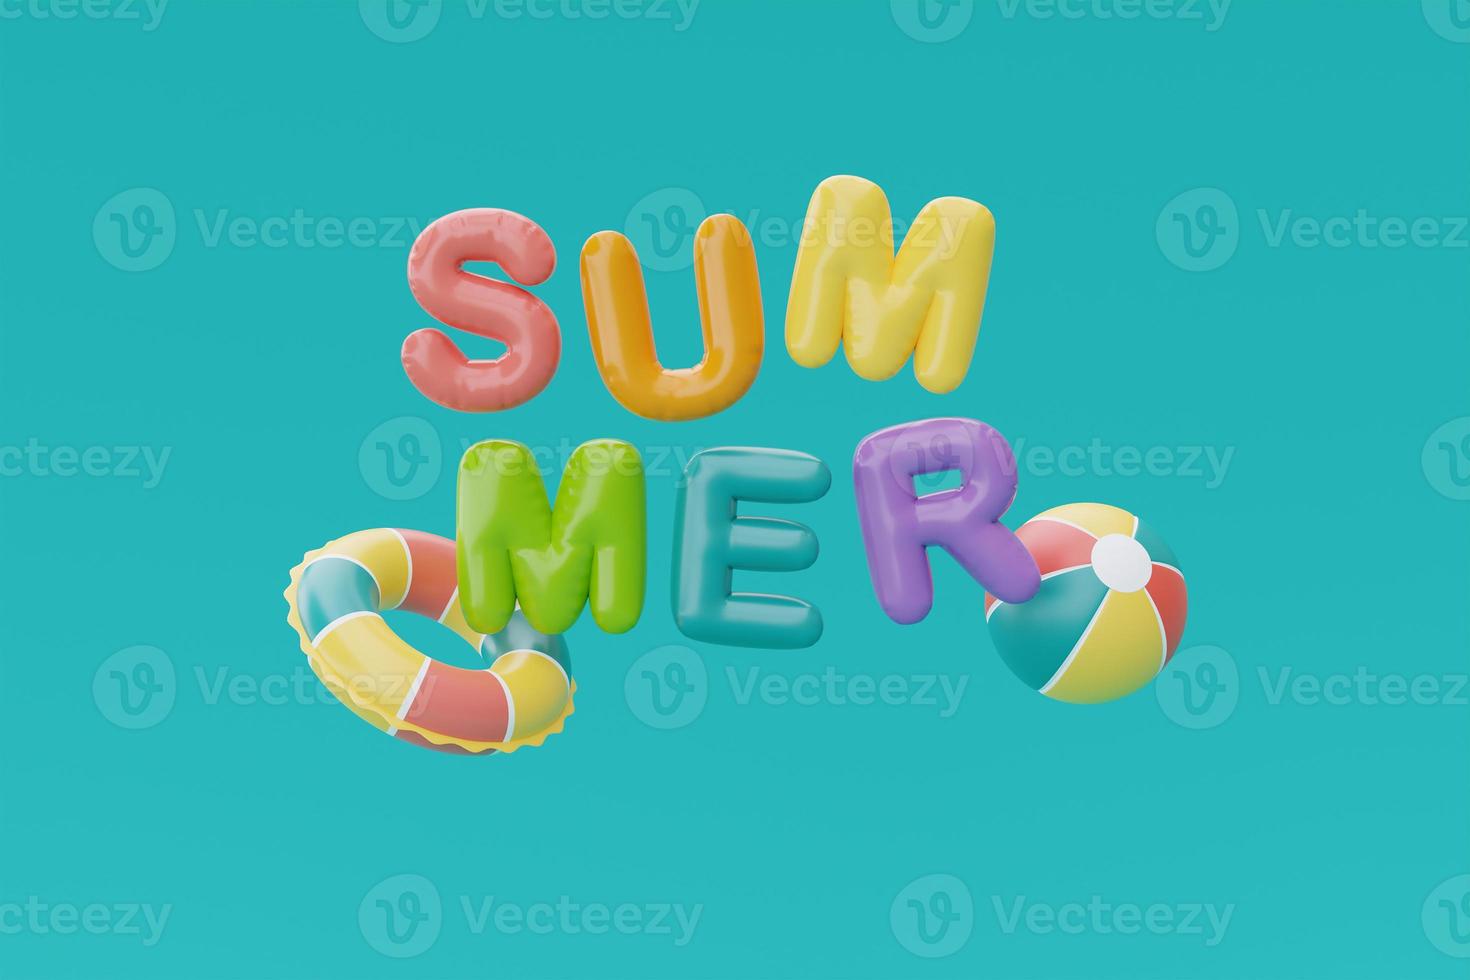 zomertijd concept met kleurrijke ballon tekst van zomer en strand elementen op blauwe achtergrond, 3D-rendering. foto